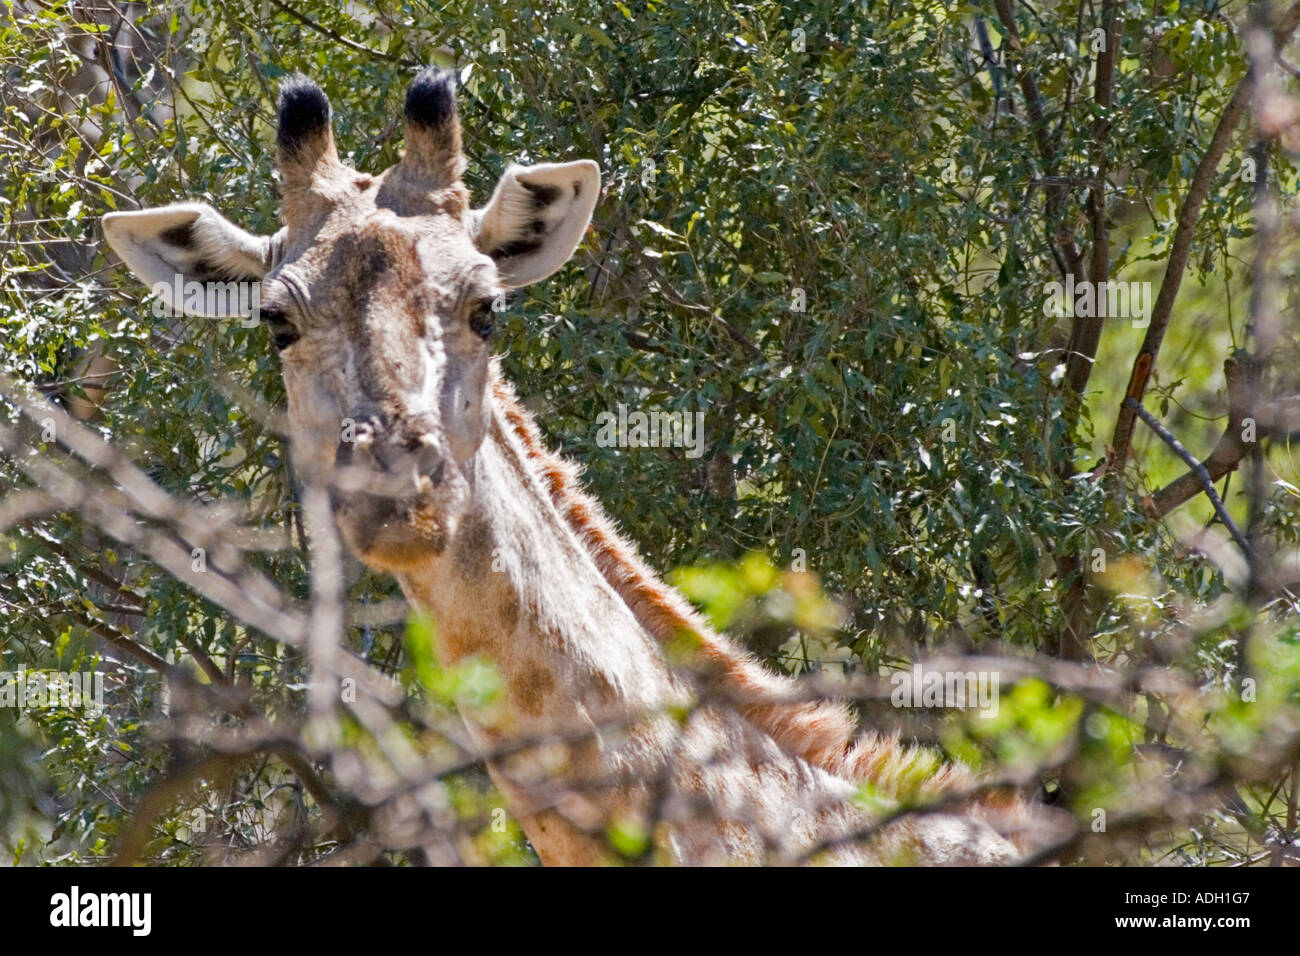 A Zambian giraffe (Giraffa camelopardalis) Stock Photo